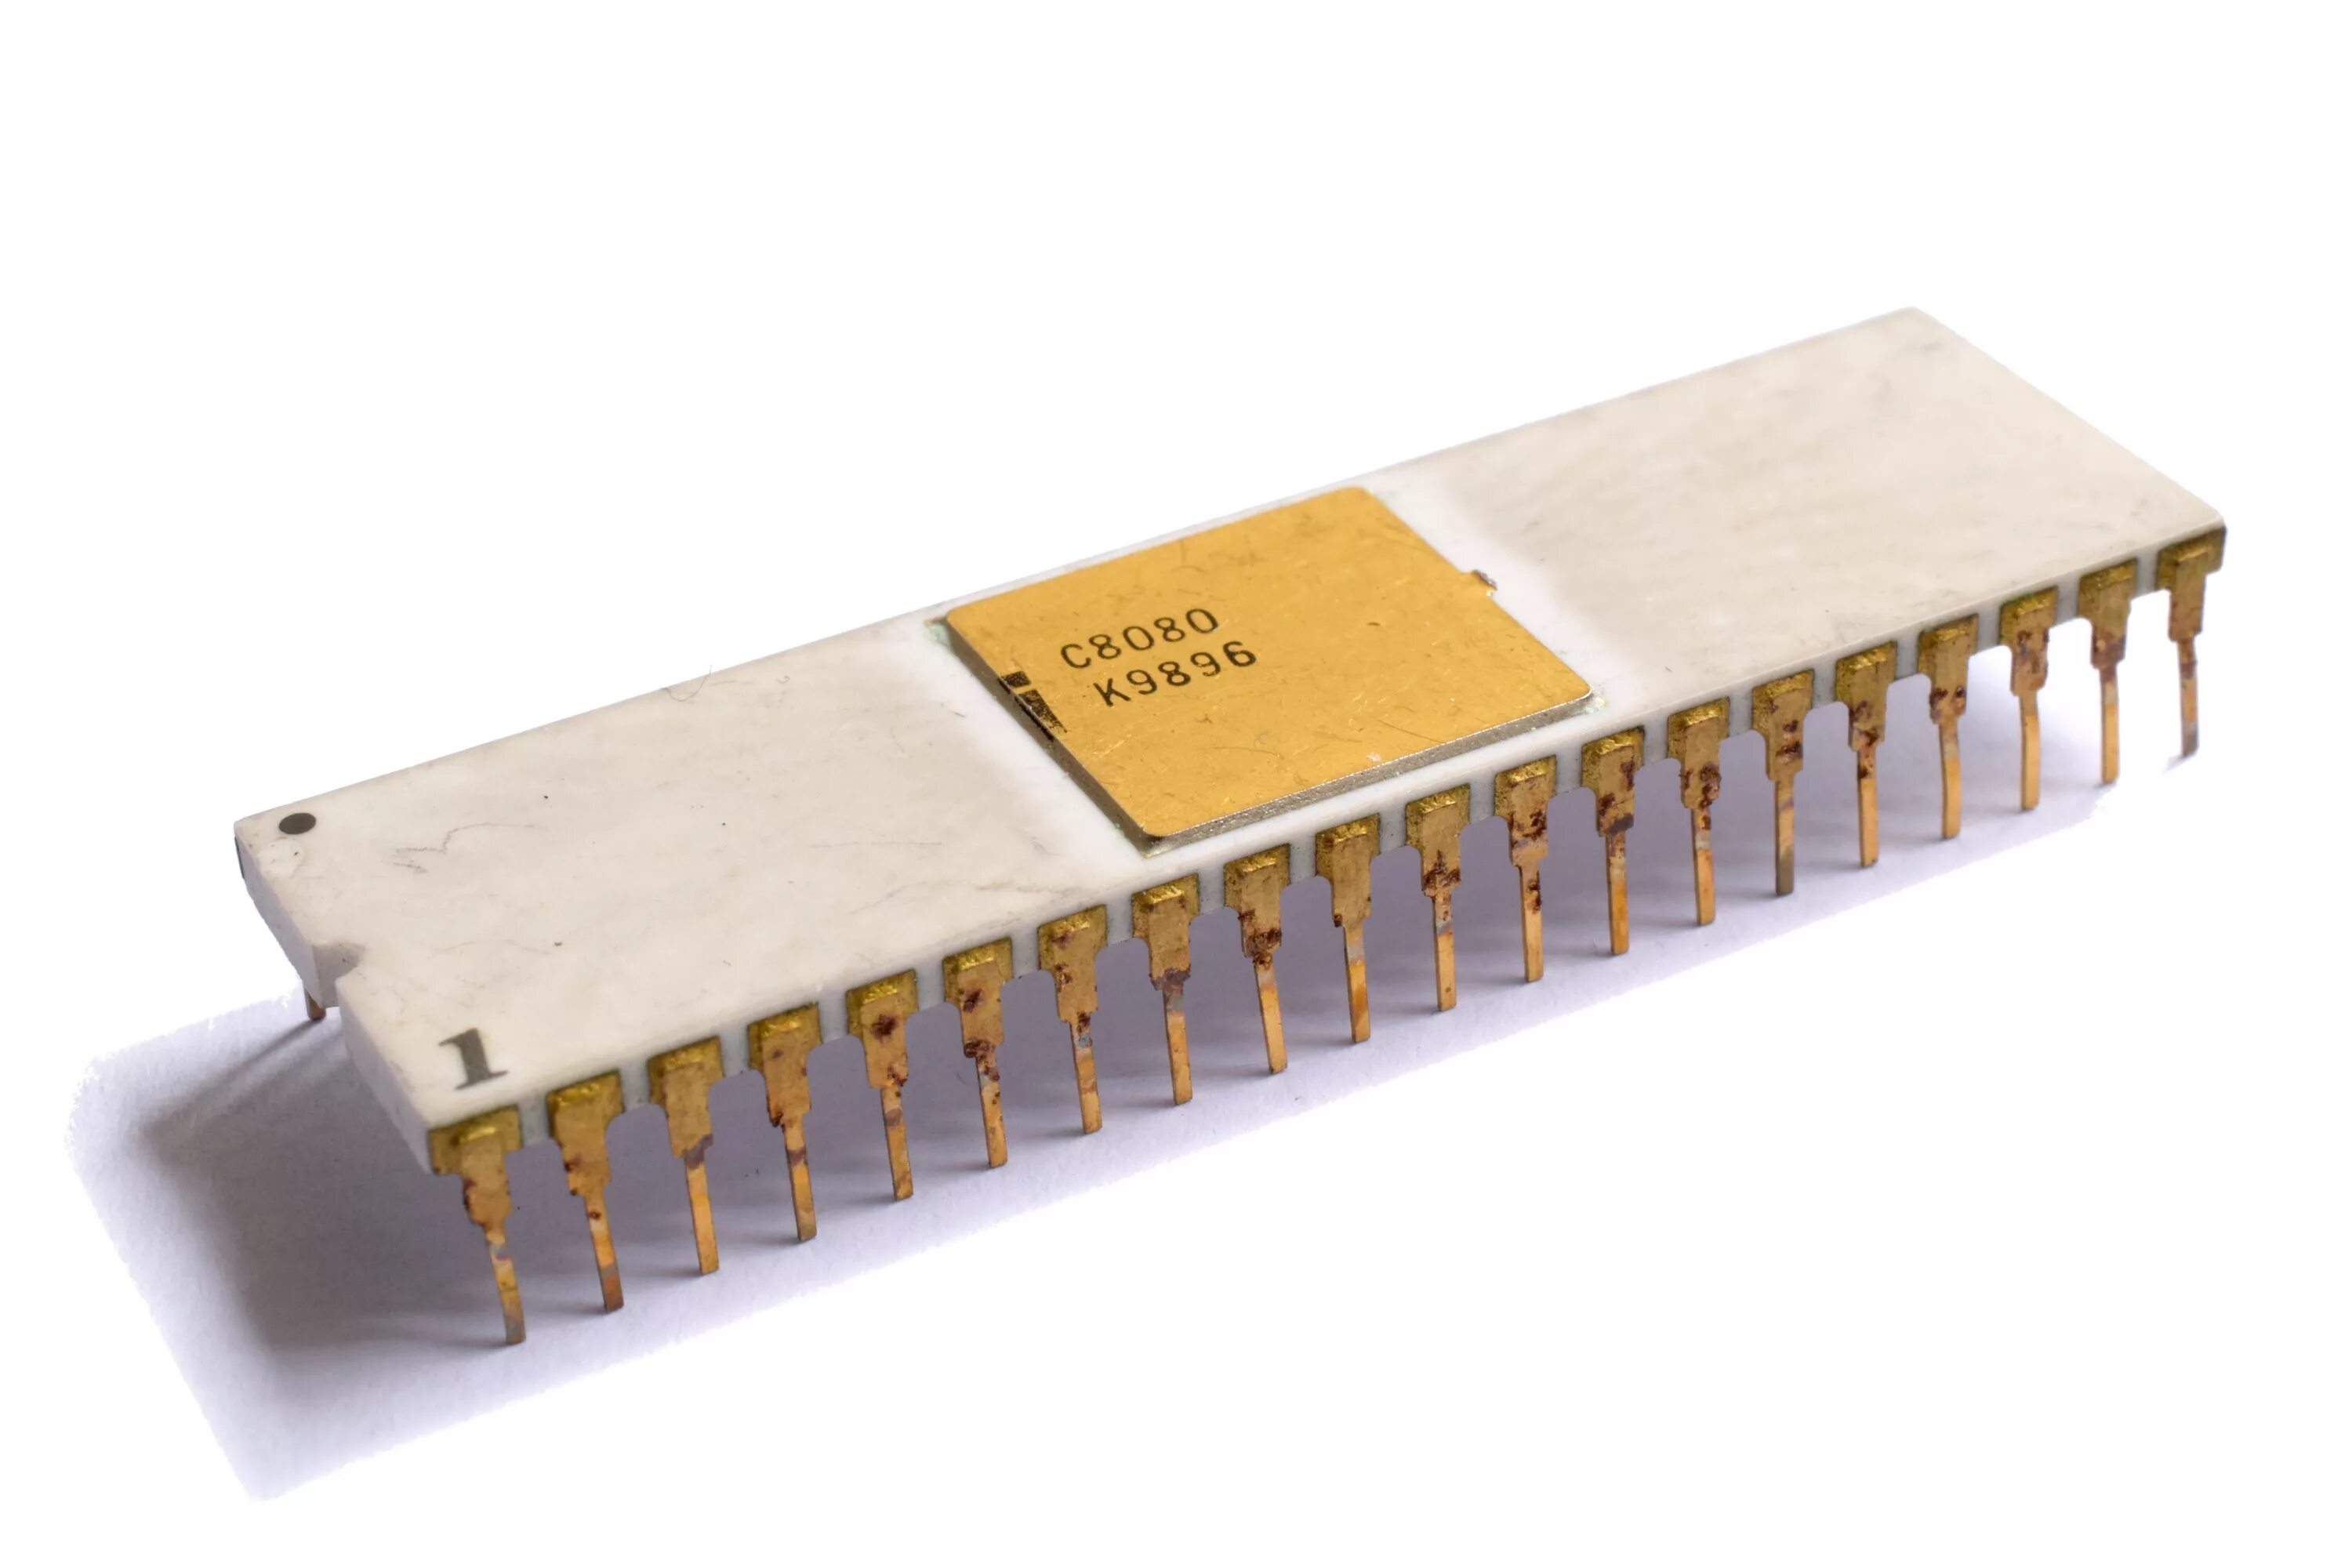 Процессор Intel 8080. 8-Разрядный Intel 8080. Microprocessor Intel 8080. Первый микропроцессор Intel 8080.